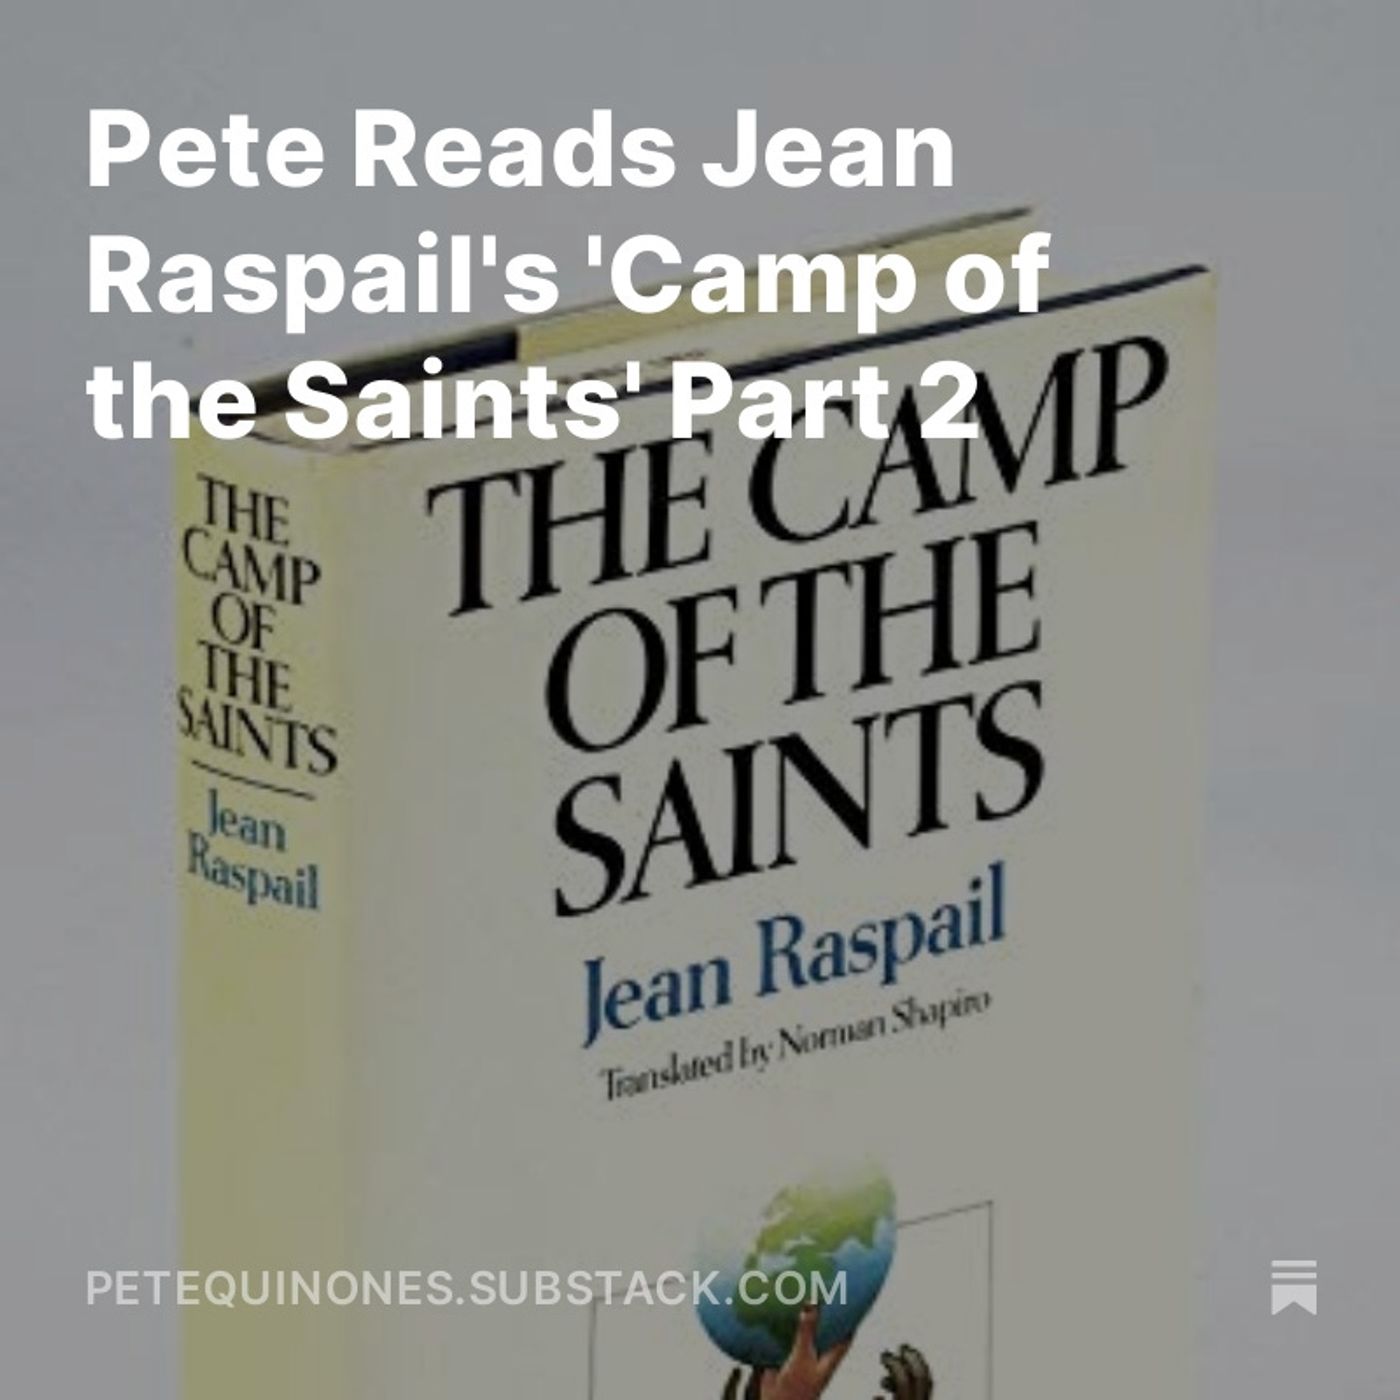 Pete Reads Jean Raspail's 'Camp of the Saints' Part 2